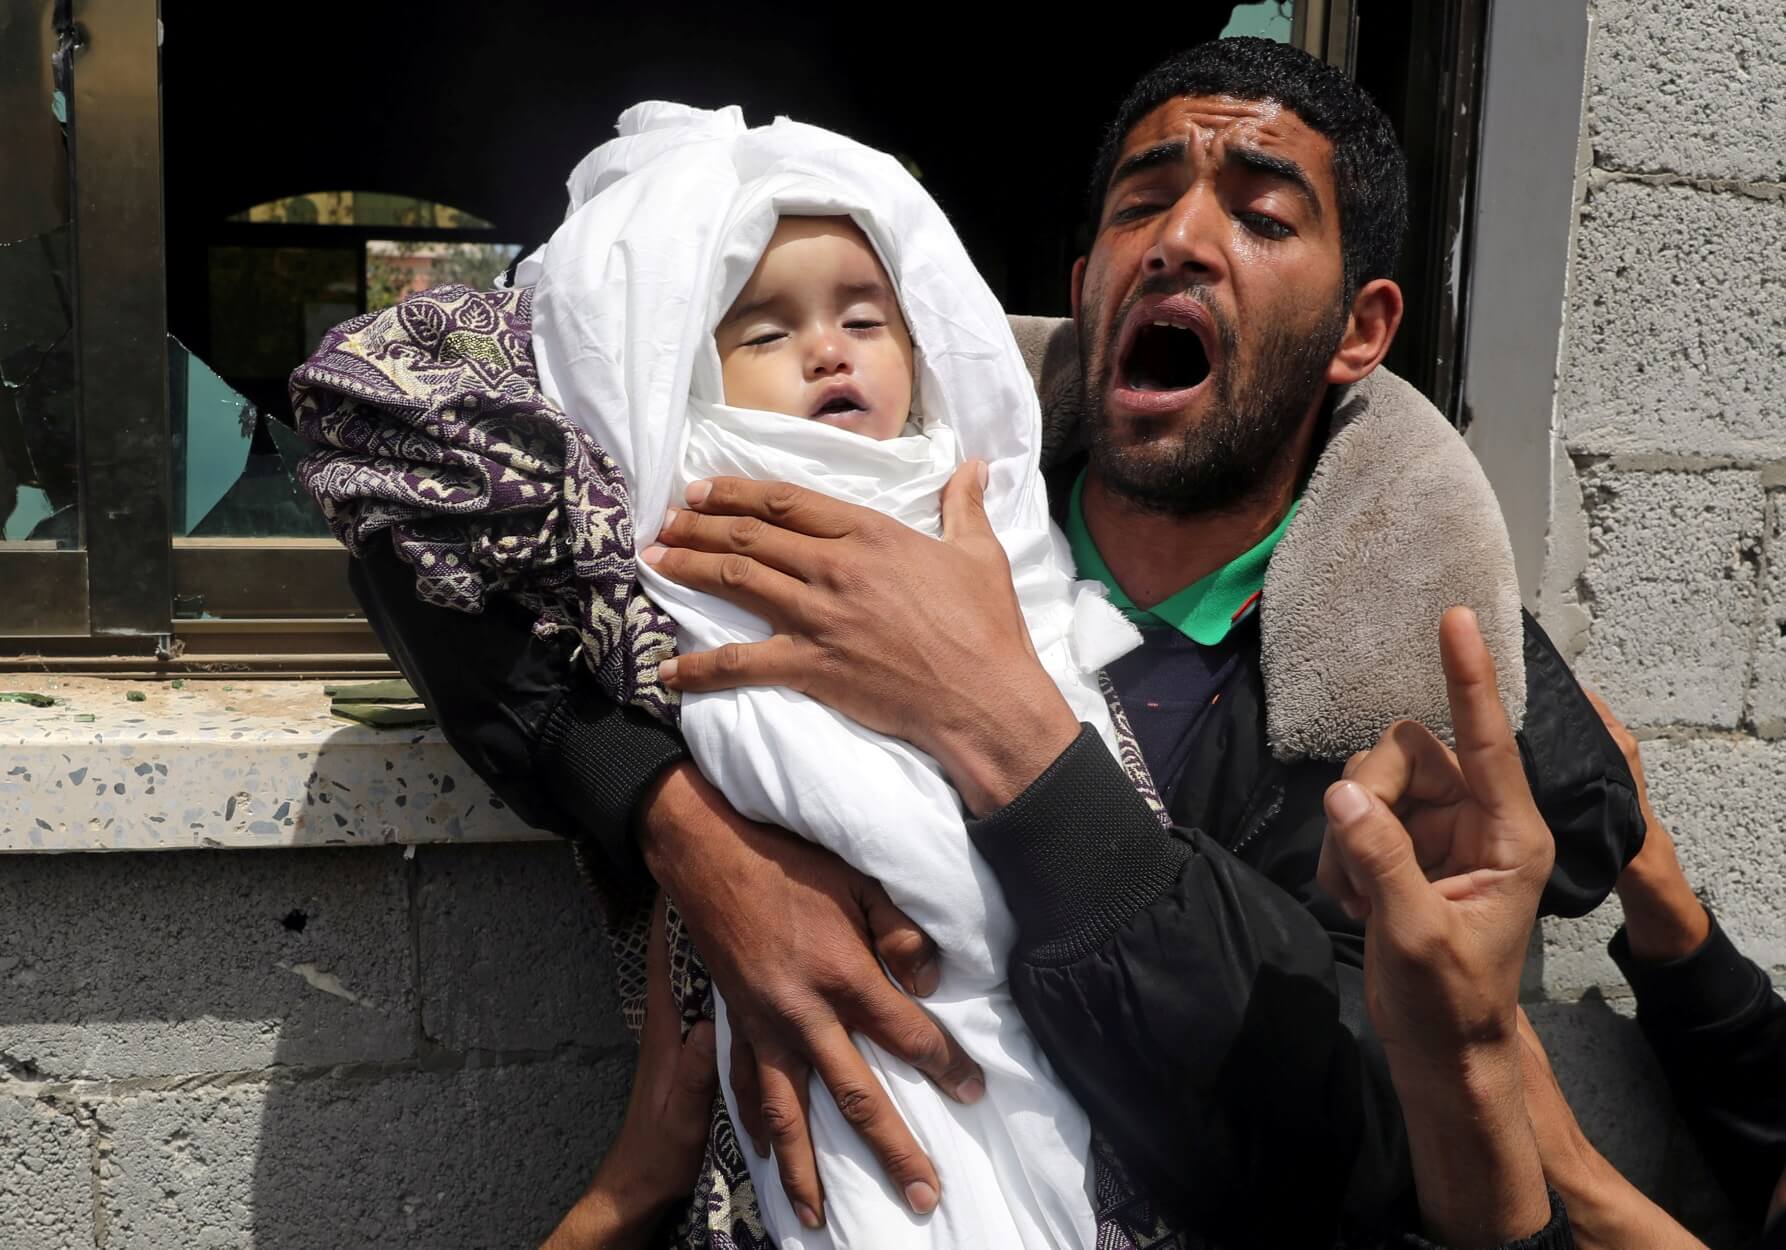 Μέση Ανατολή – τύμπανα πολέμου: Νεκροί 8 Παλαιστίνιοι και 3 Ισραηλινοί – Video